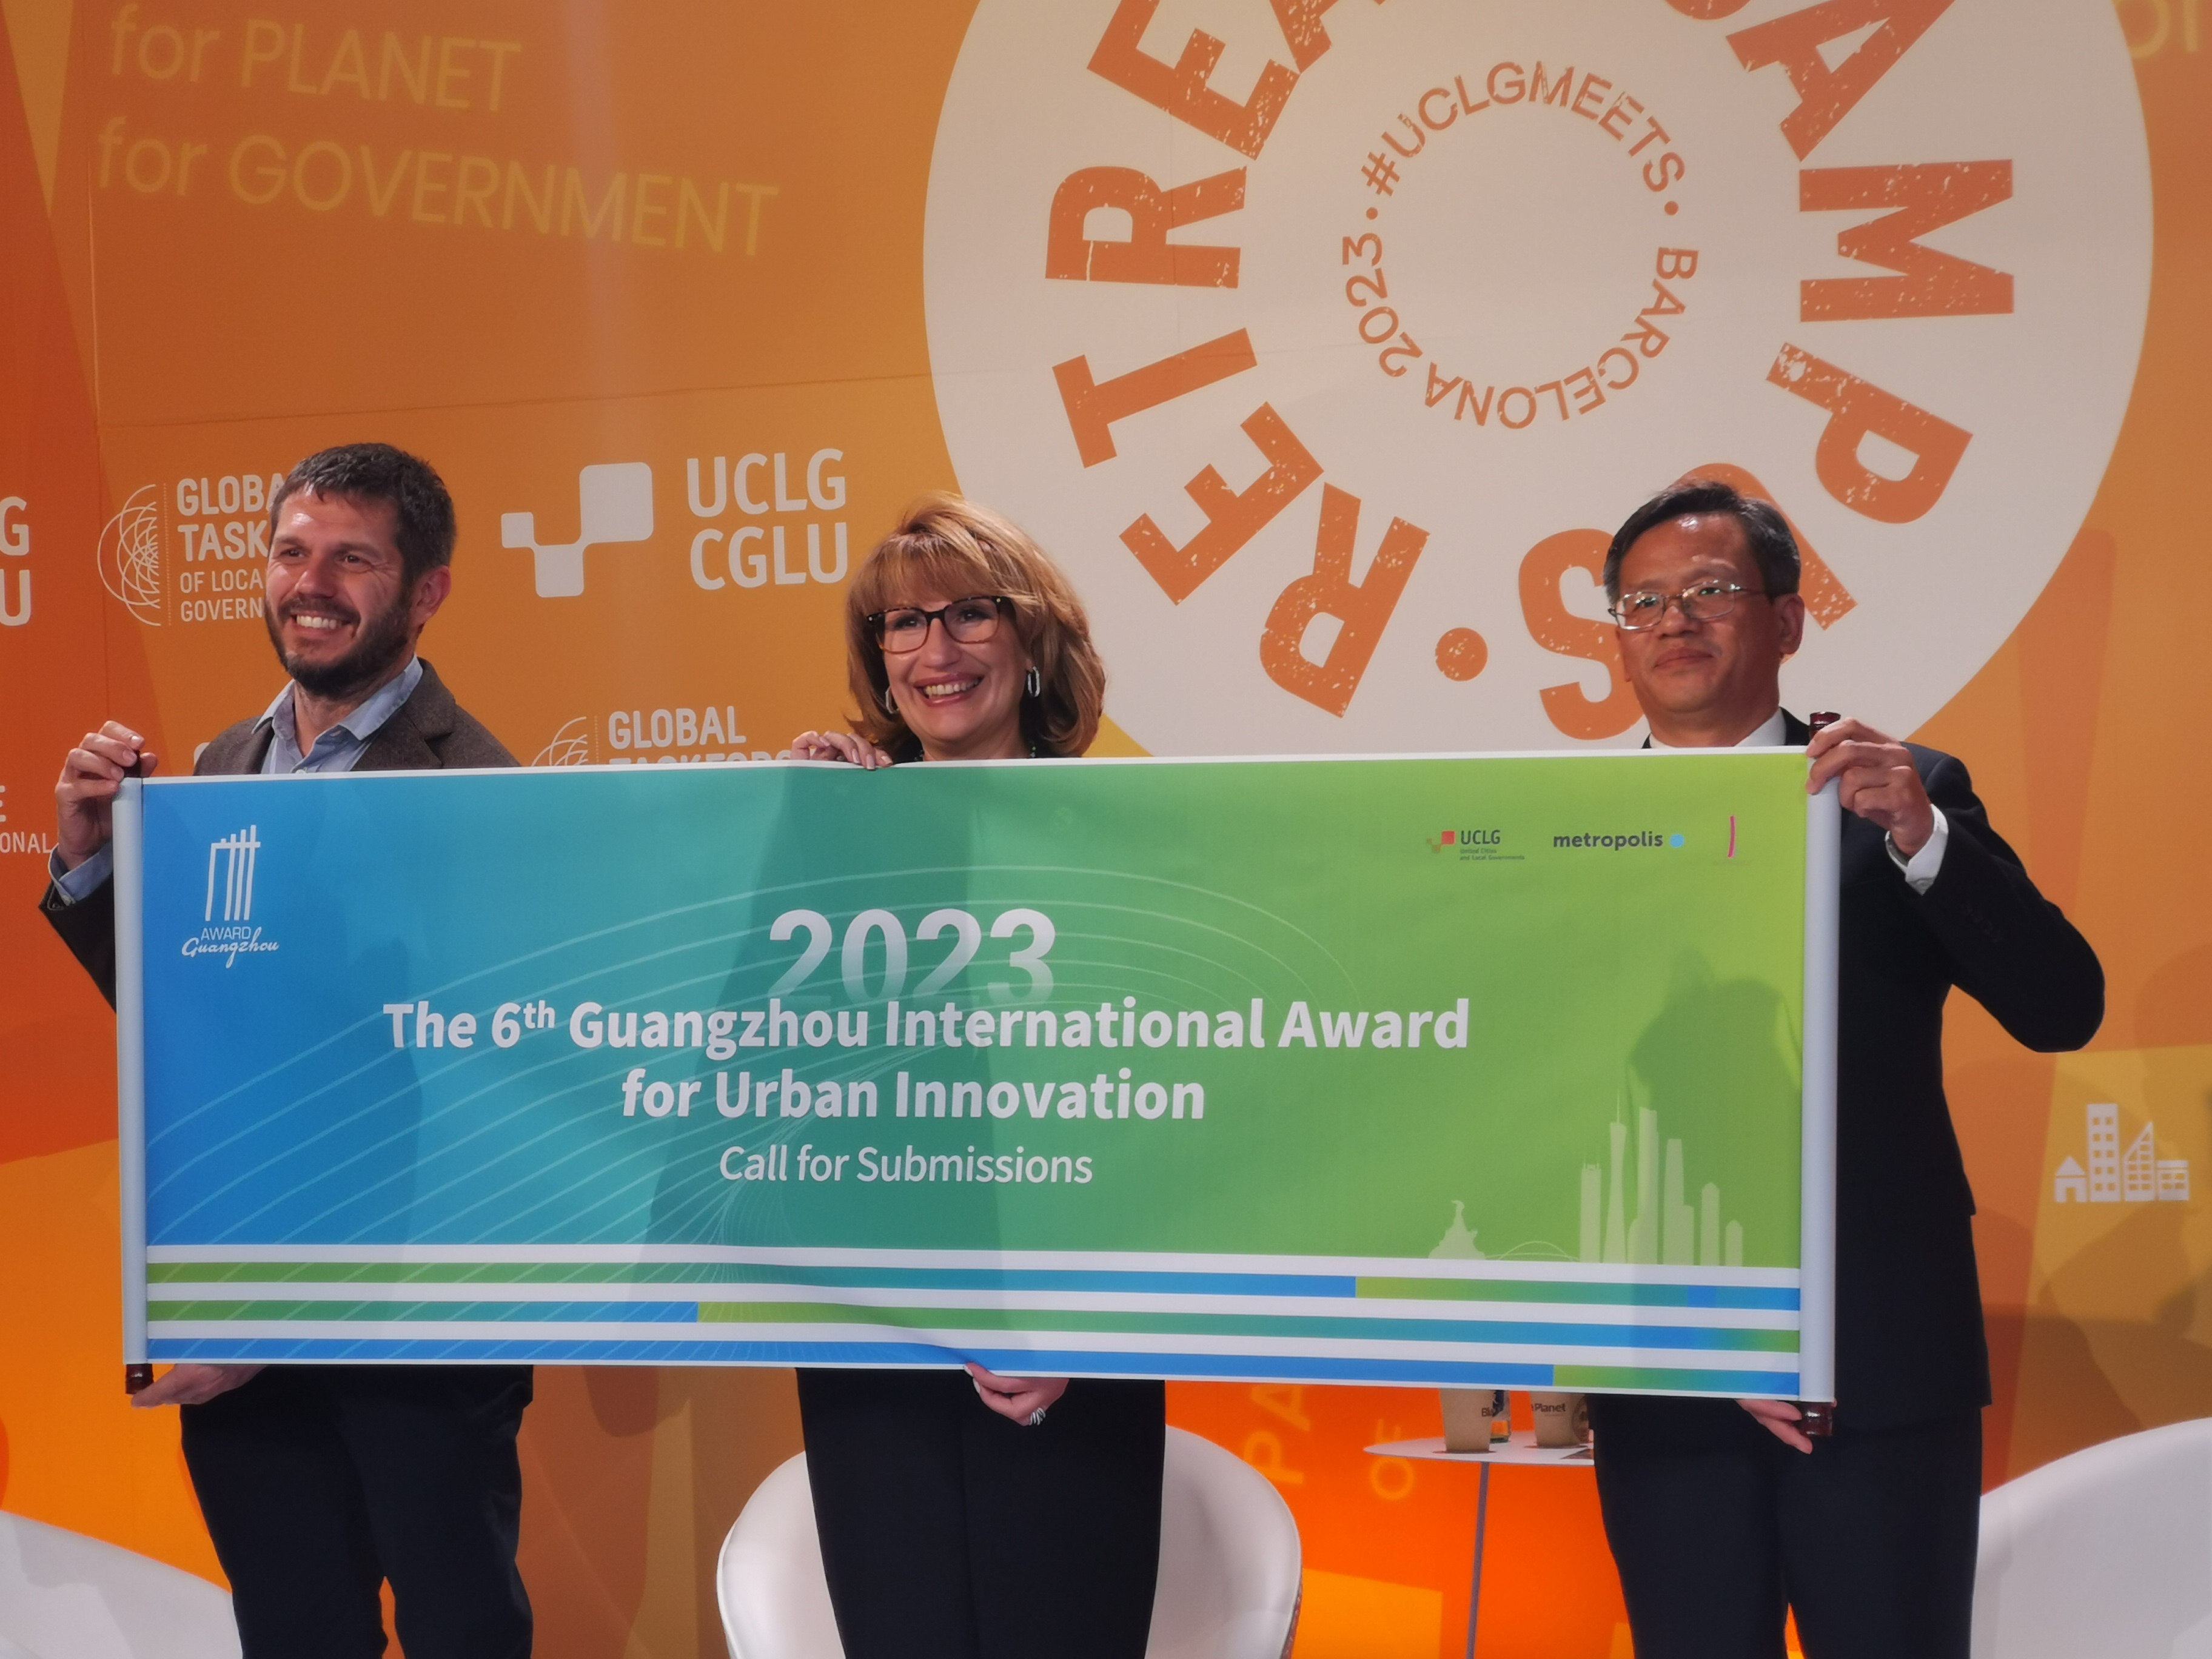 第六届广州国际城市创新奖启动 诚邀全球城市参加评选